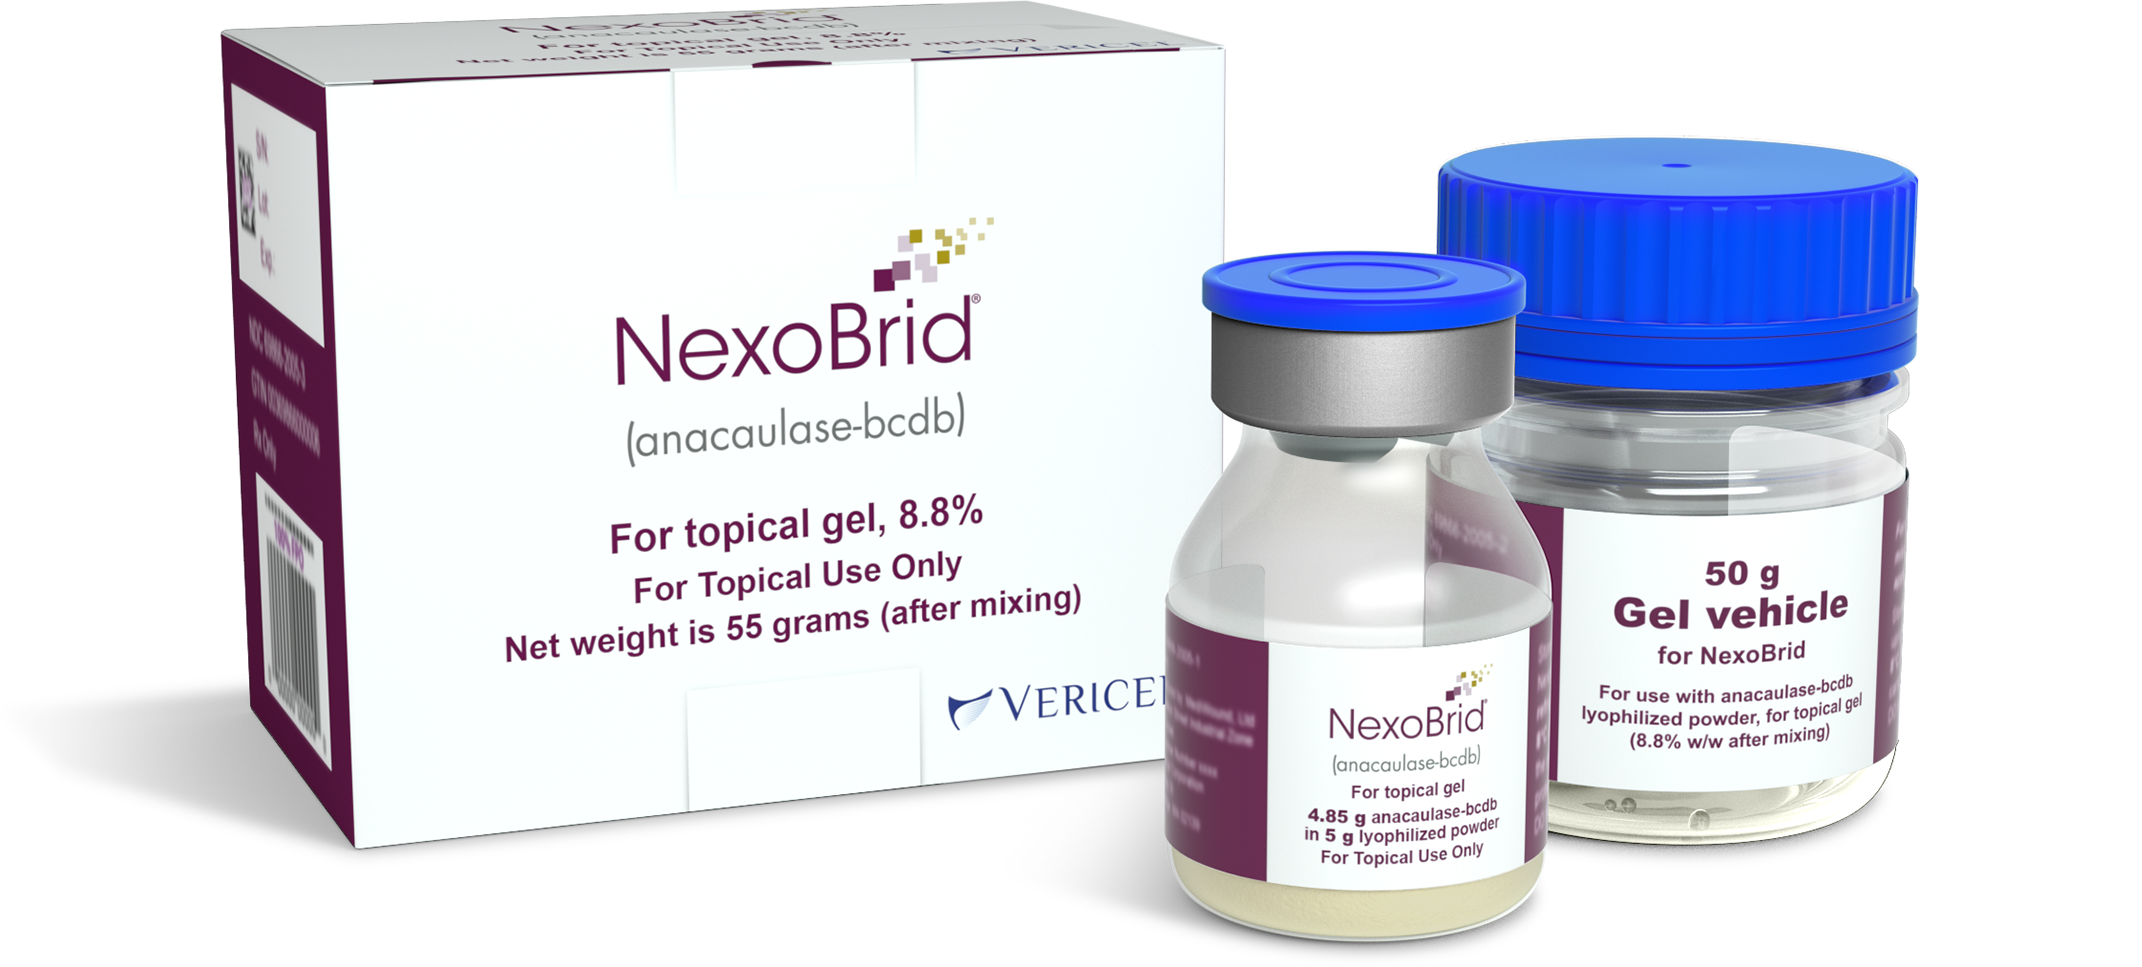 NexoBrid powder and gel